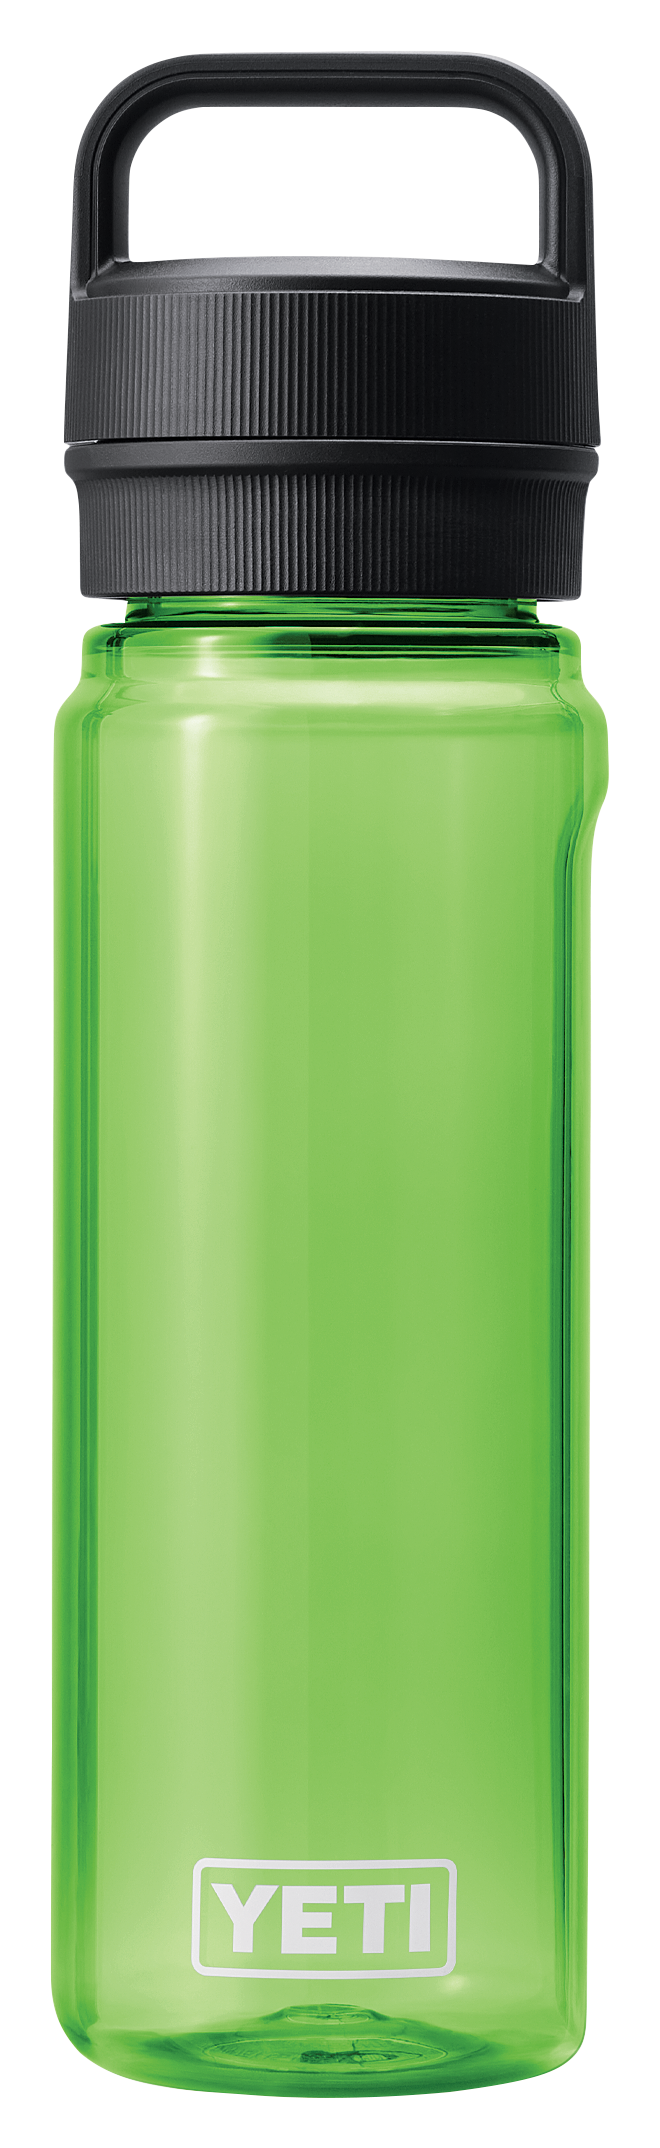 Yeti - 25 oz Yonder Water Bottle - Charcoal